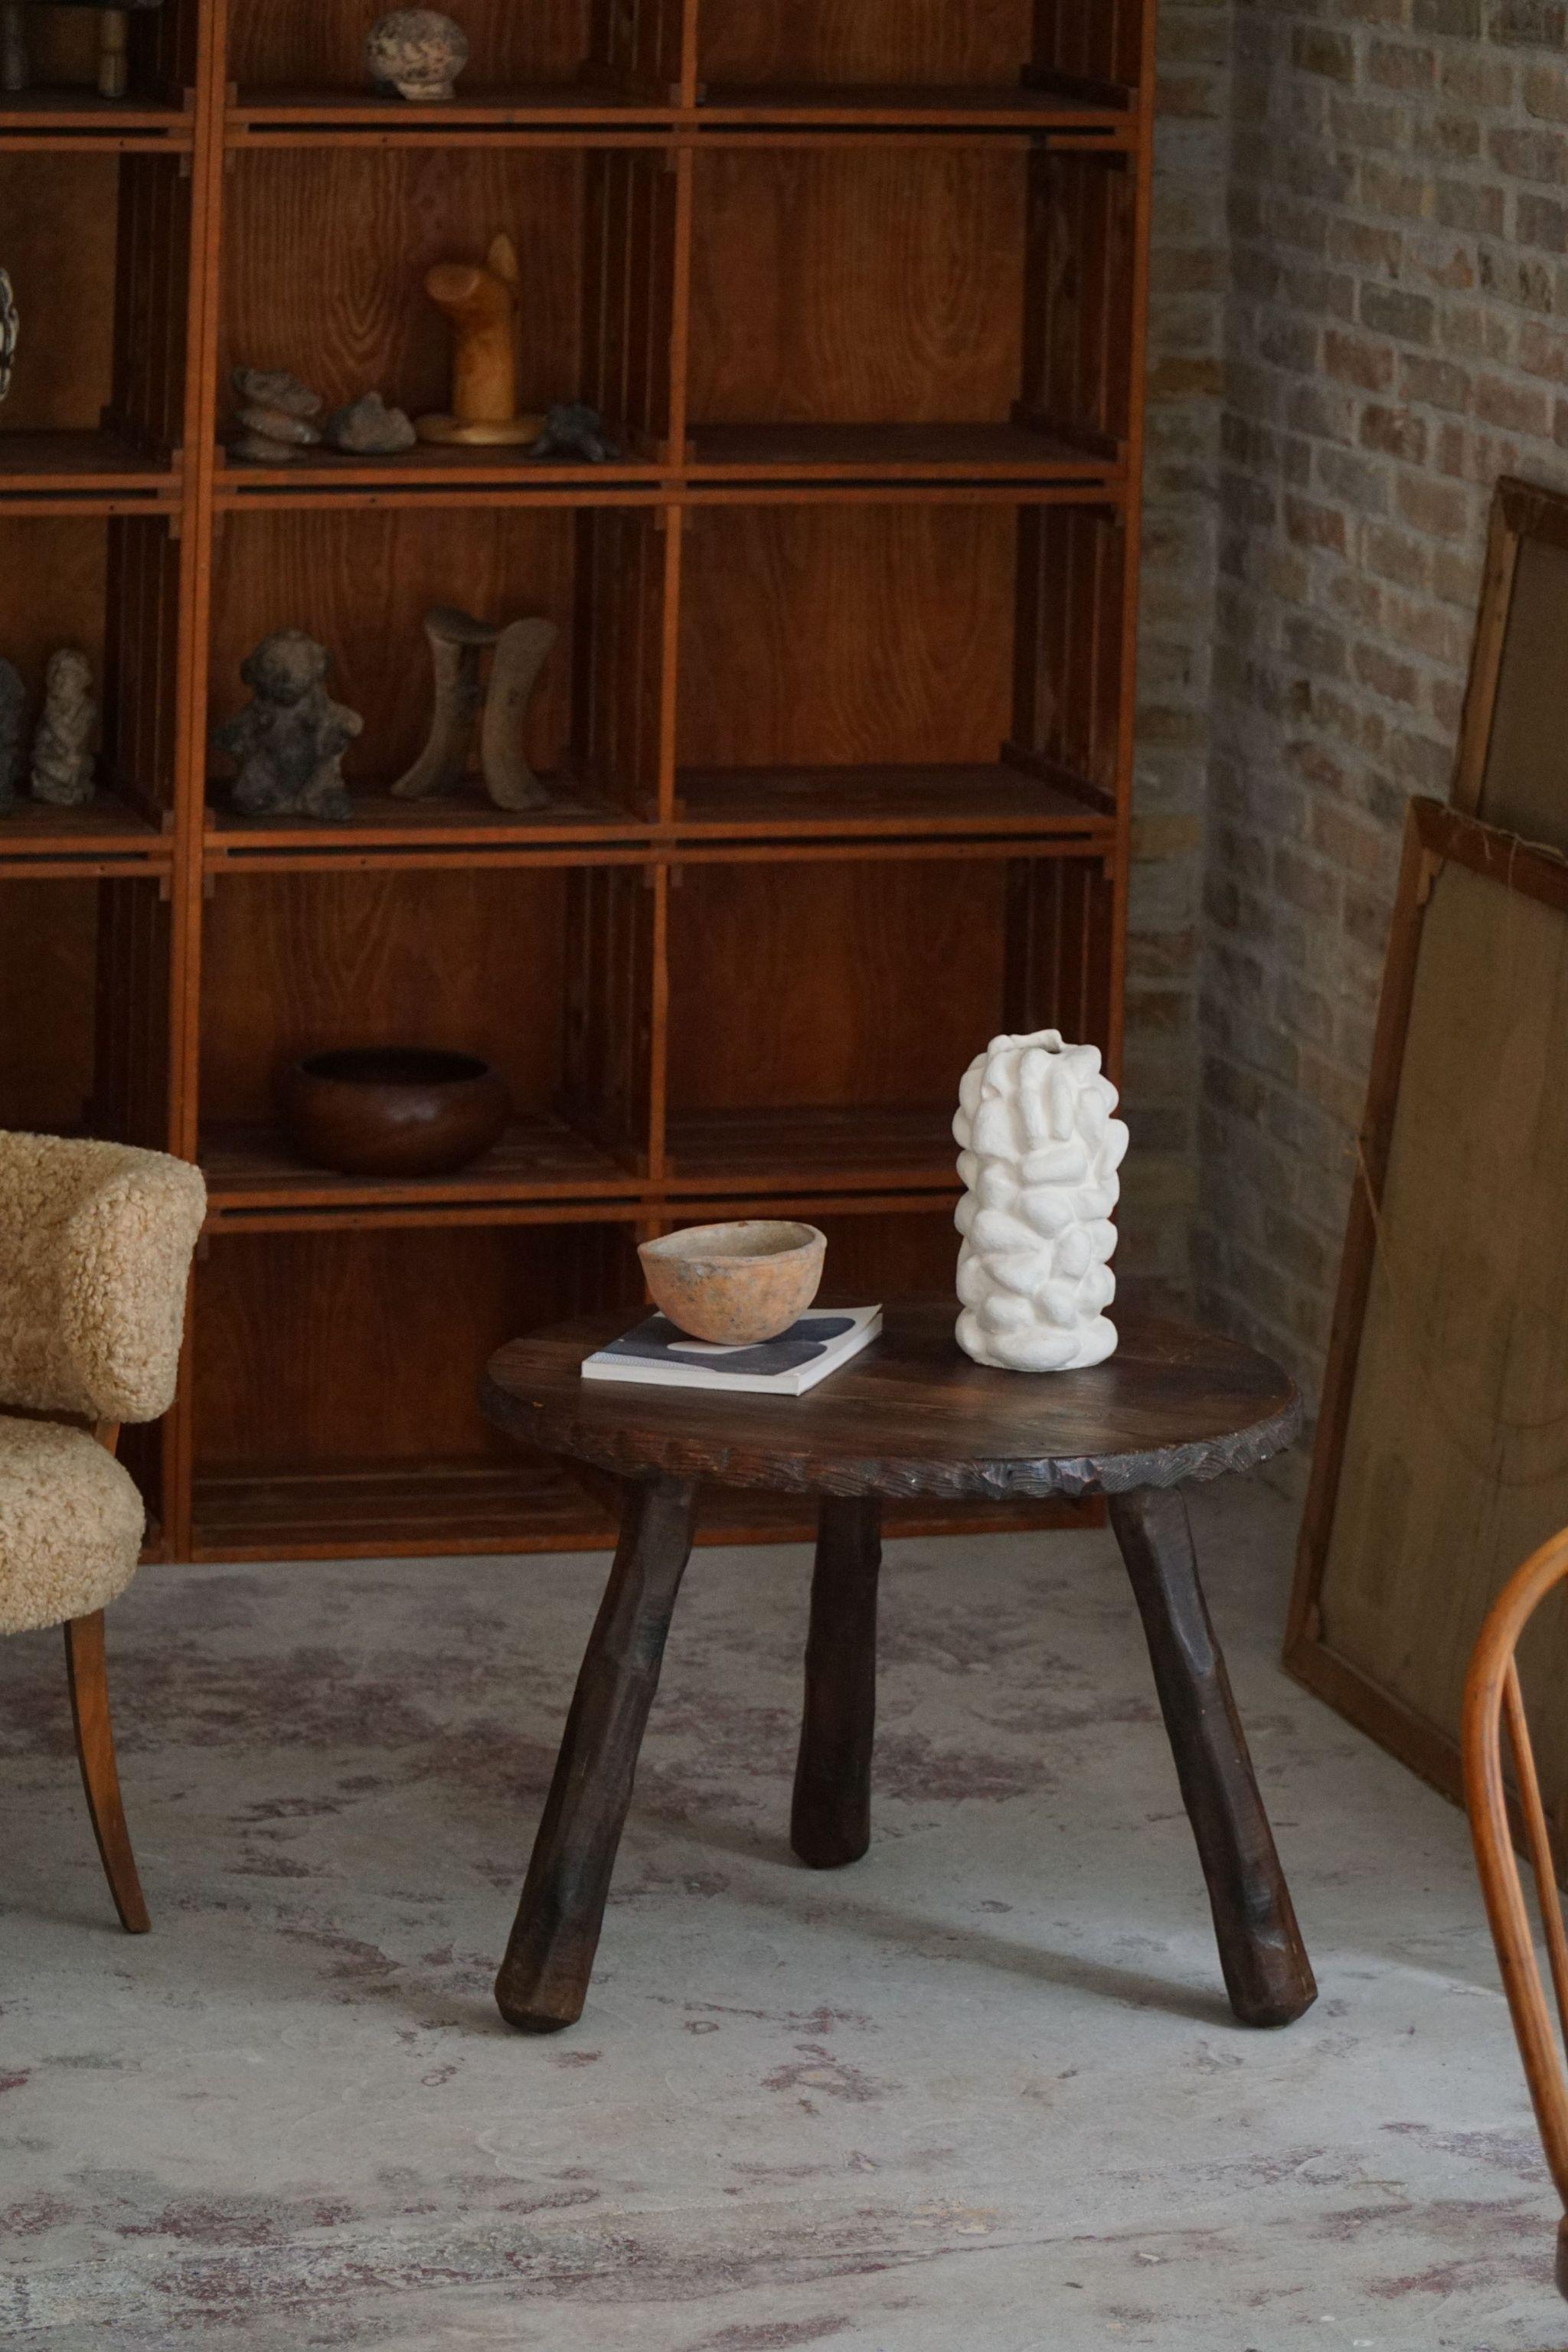 Table d'appoint / table basse Wabi Sabi, sculptée de manière experte dans du pin teinté par un ébéniste suédois qualifié dans les années 1960. Cette table affiche une esthétique minimaliste avec des imperfections subtiles qui célèbrent la beauté des